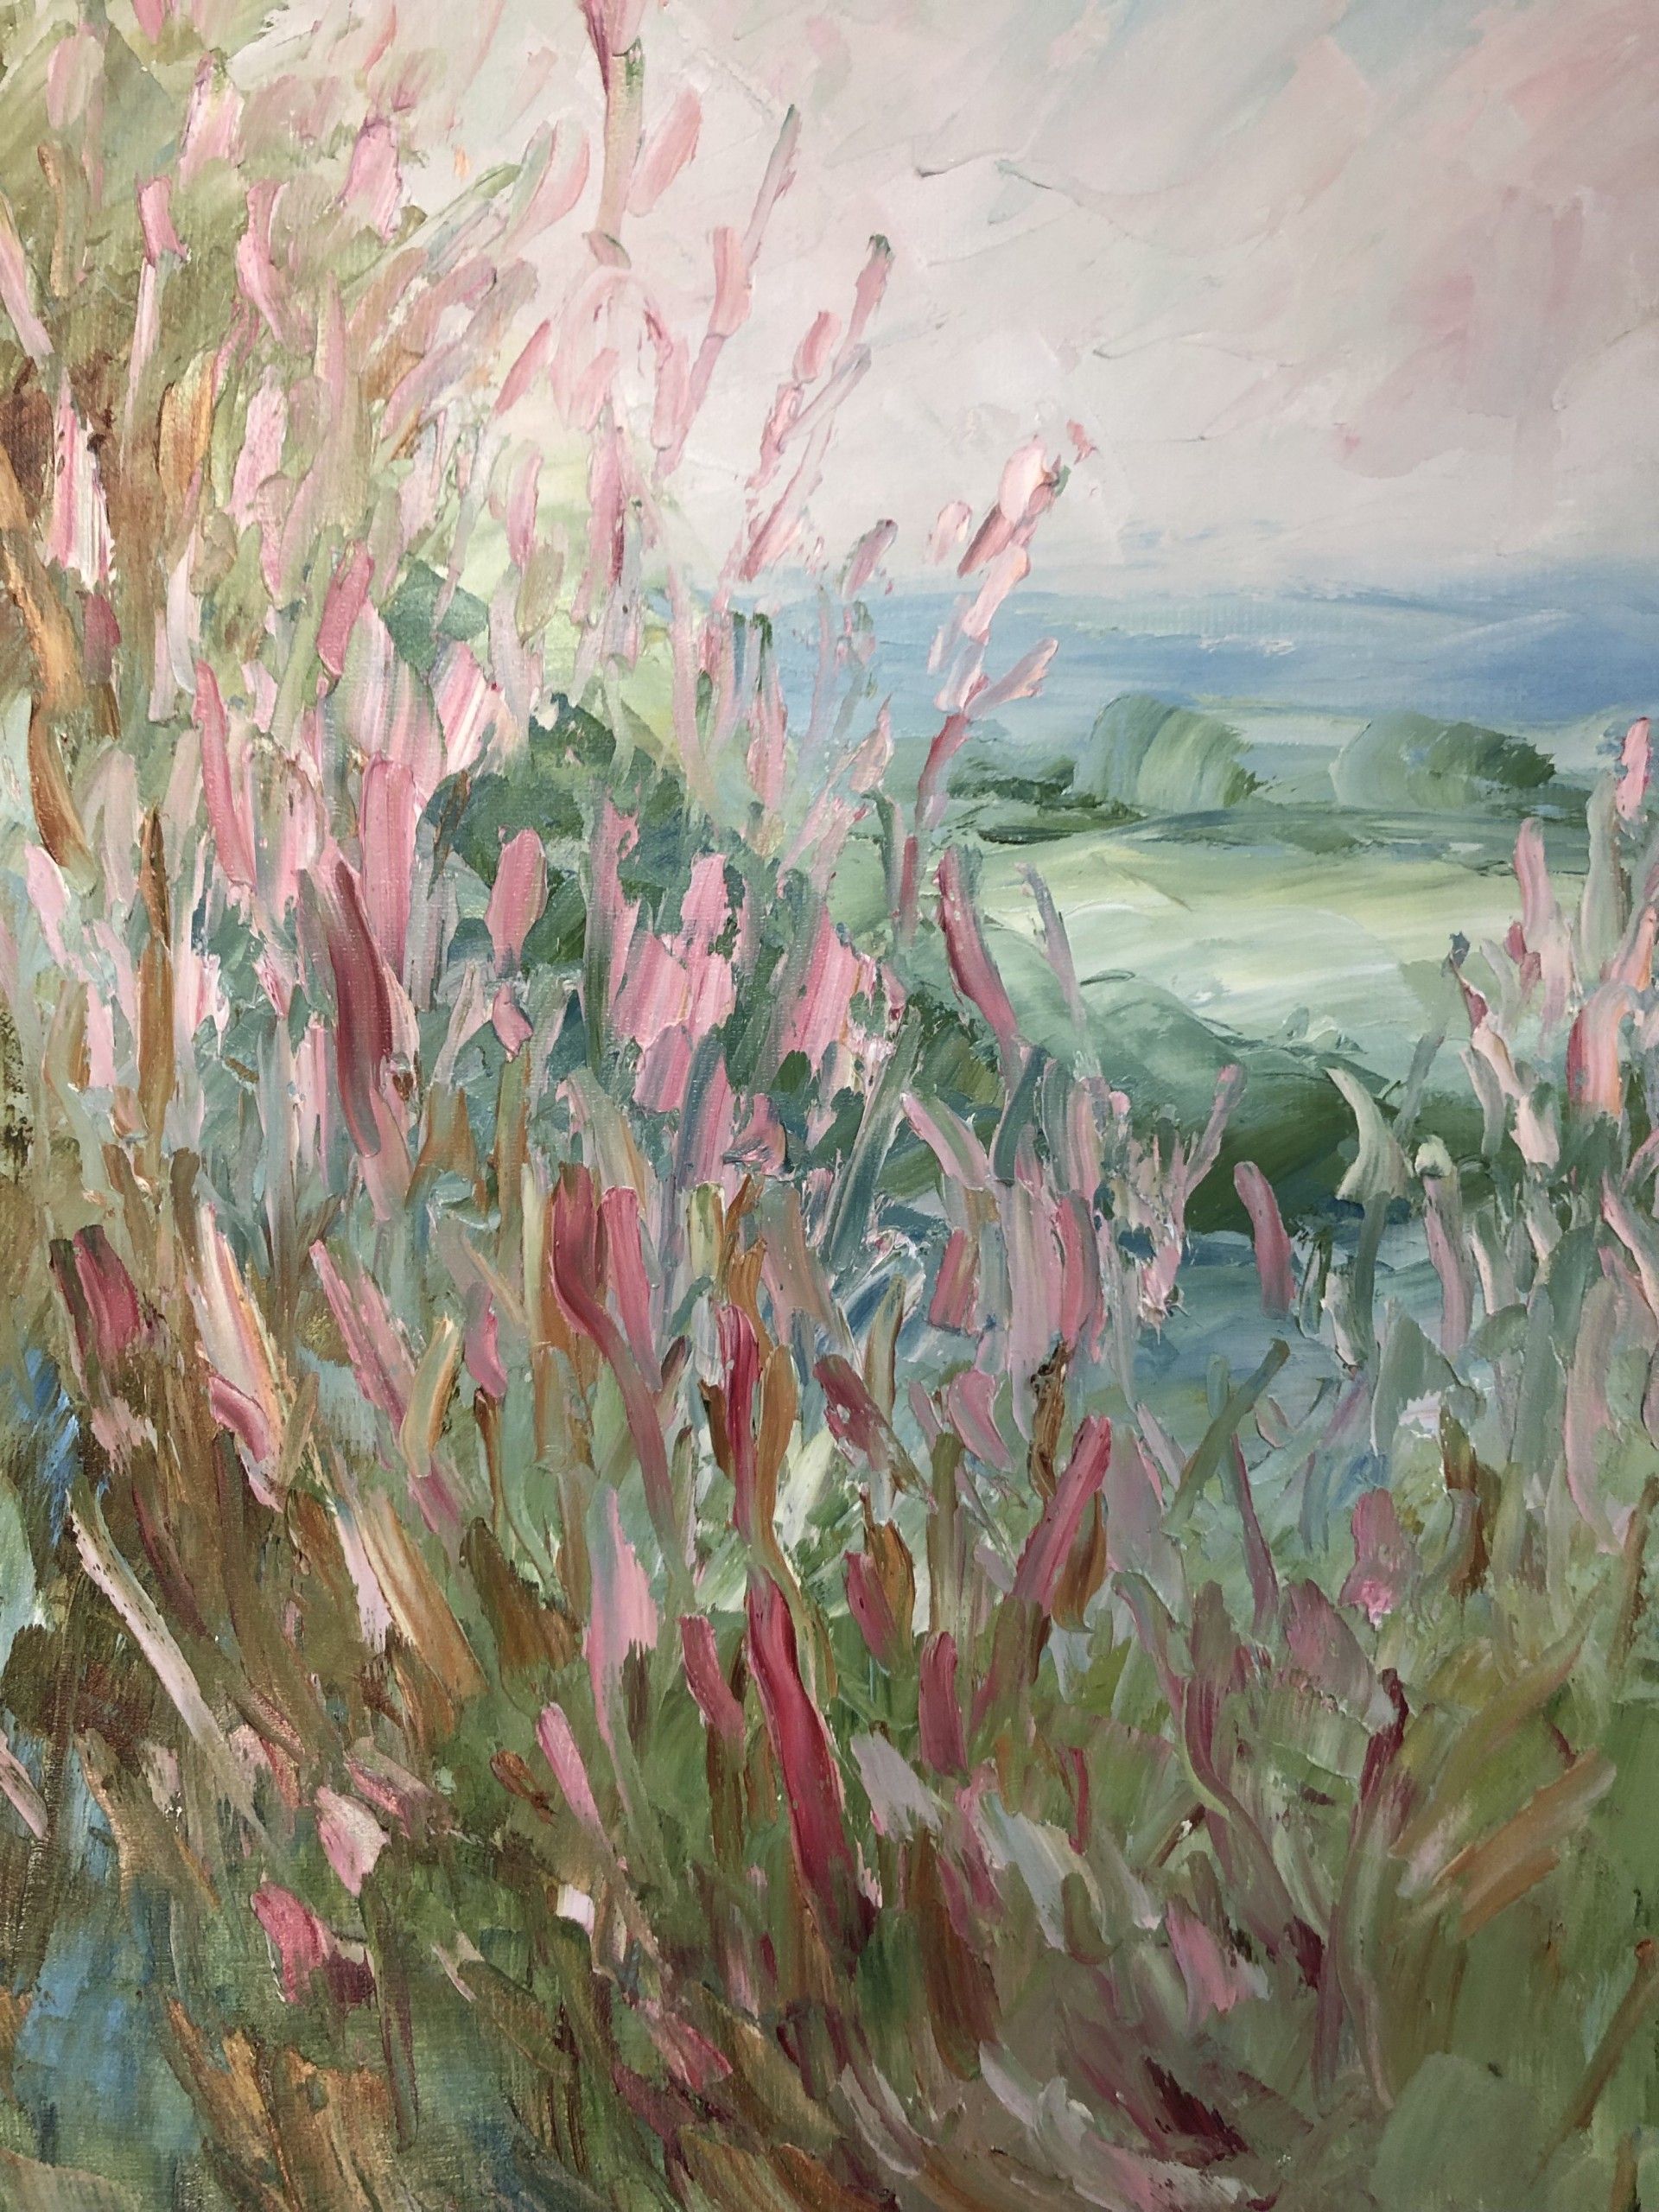 Willow Herb by Rupert Aker